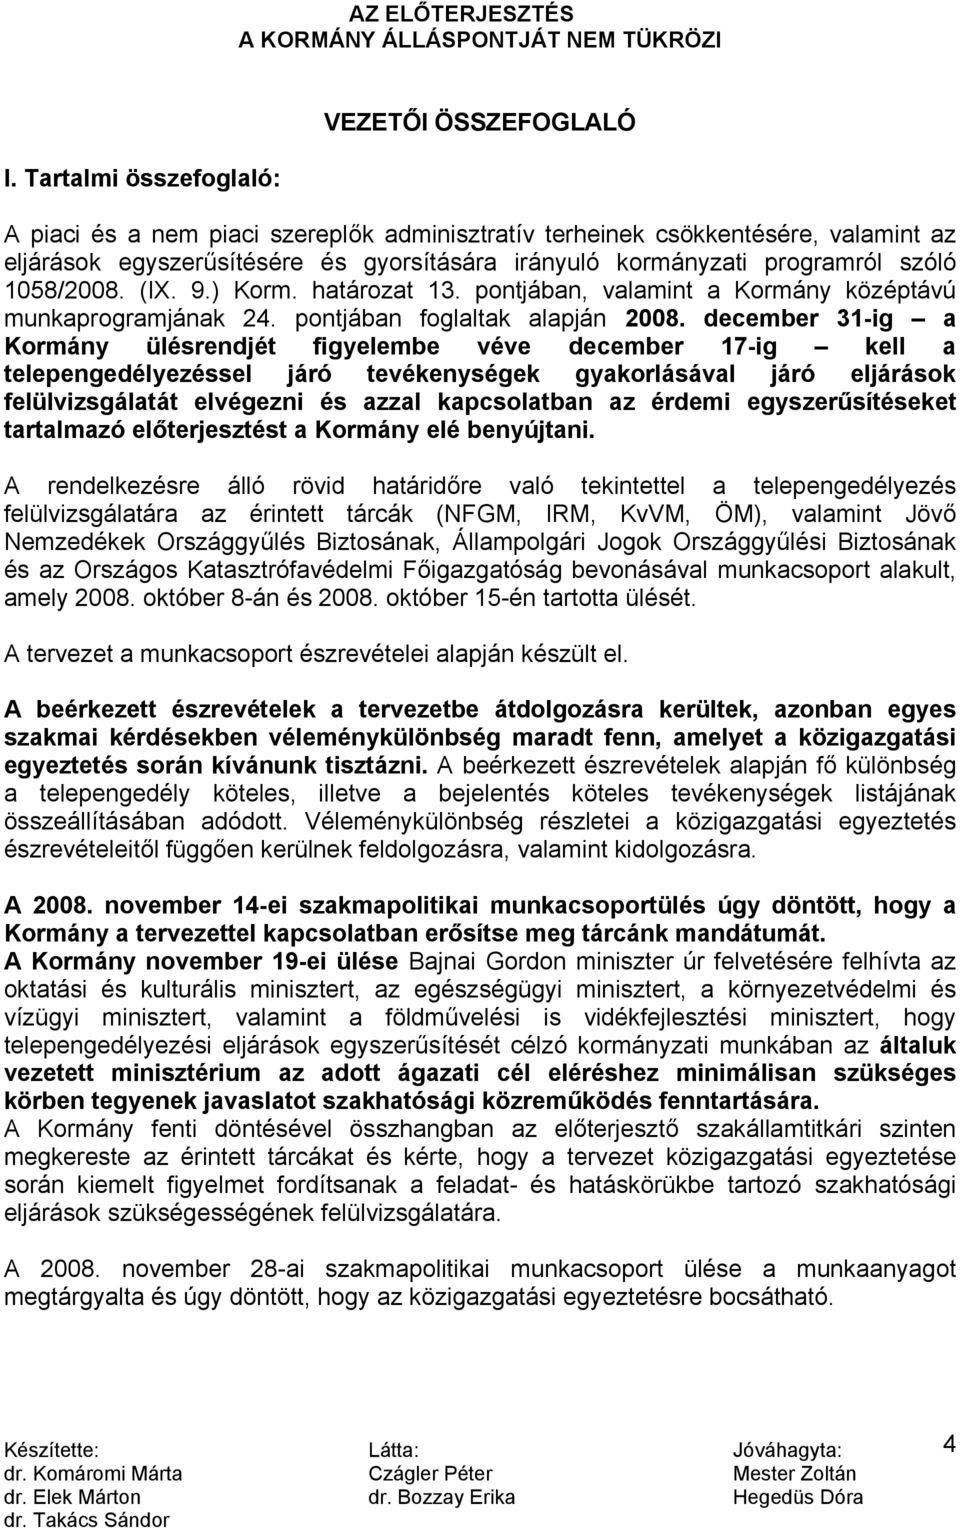 december 31-ig a Kormány ülésrendjét figyelembe véve december 17-ig kell a telepengedélyezéssel járó tevékenységek gyakorlásával járó eljárások felülvizsgálatát elvégezni és azzal kapcsolatban az